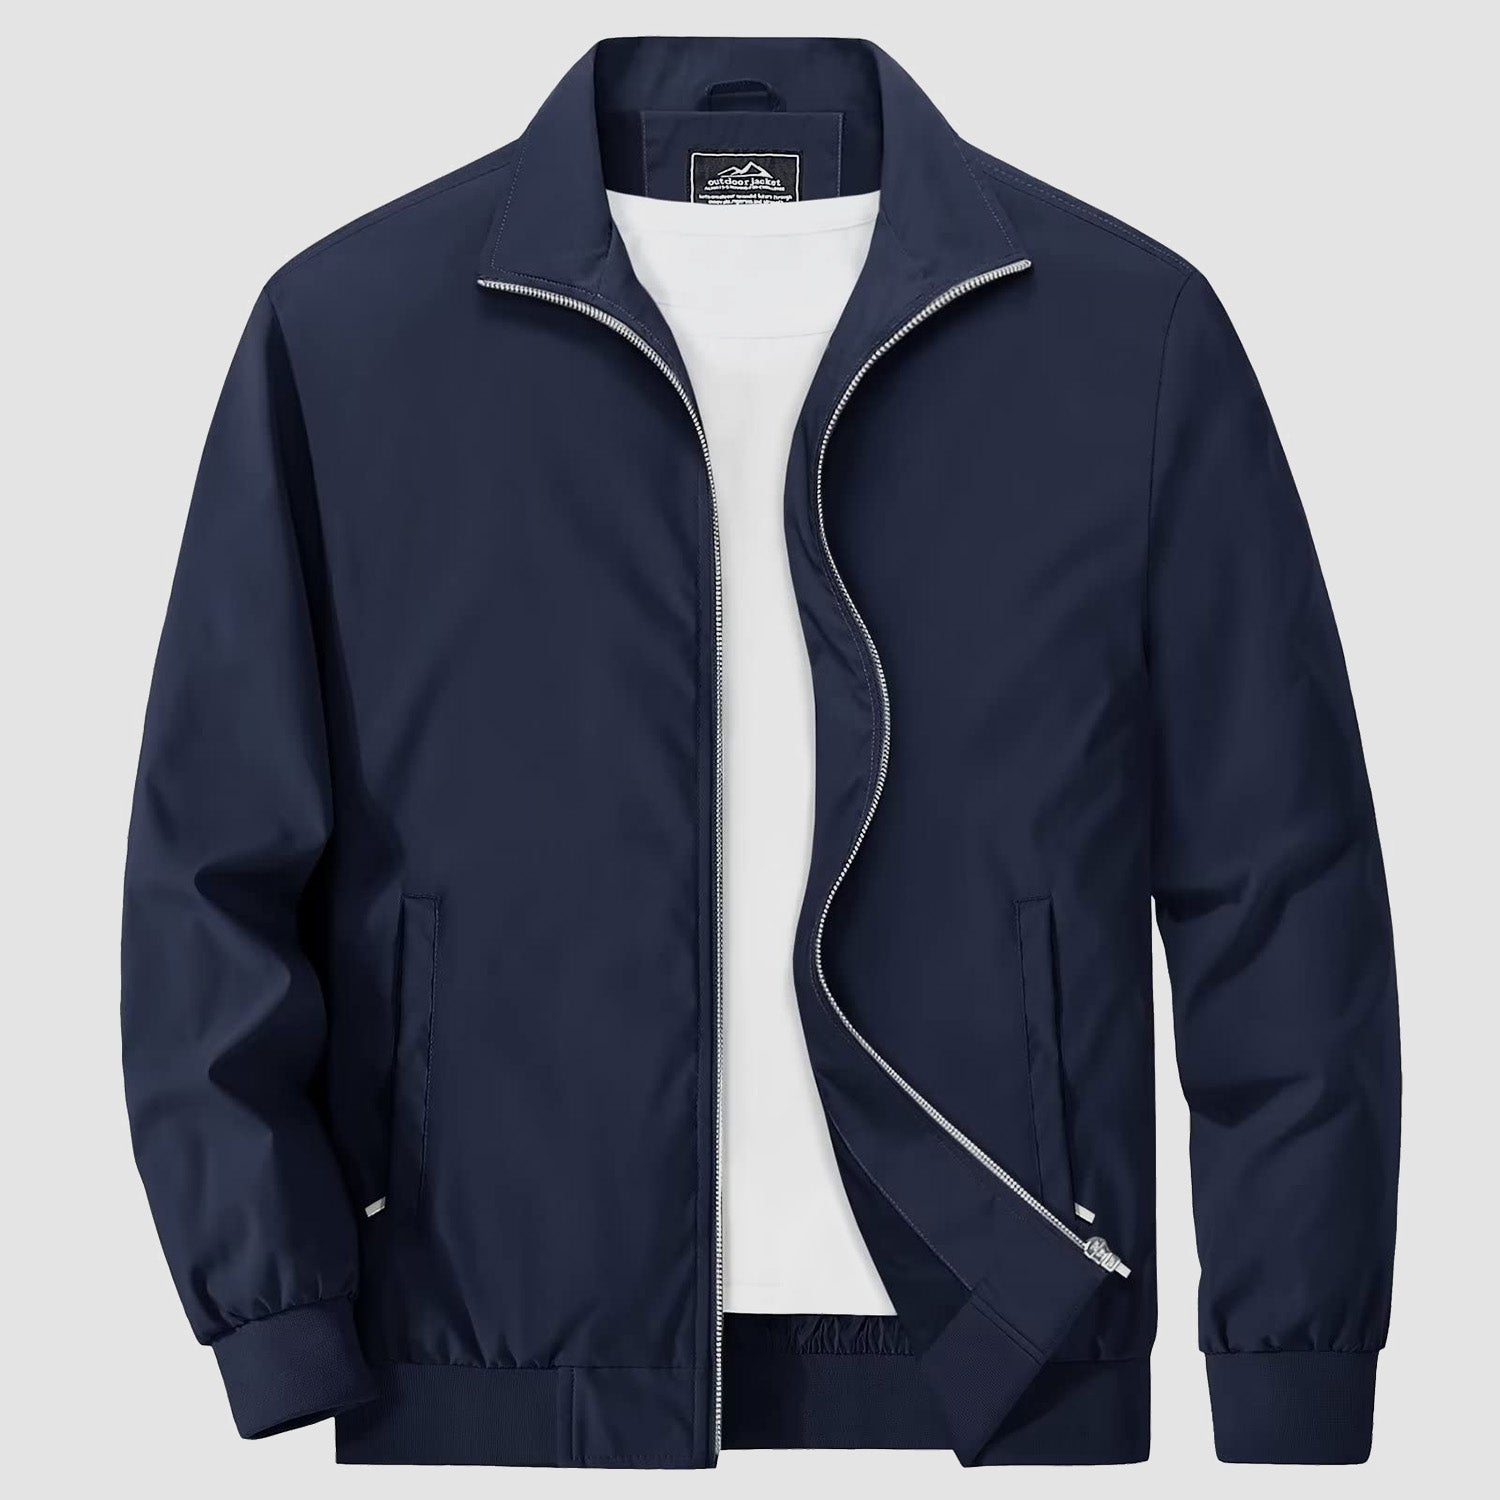 Men's Jacket Stand Collar Lightweight Windproof Outwear